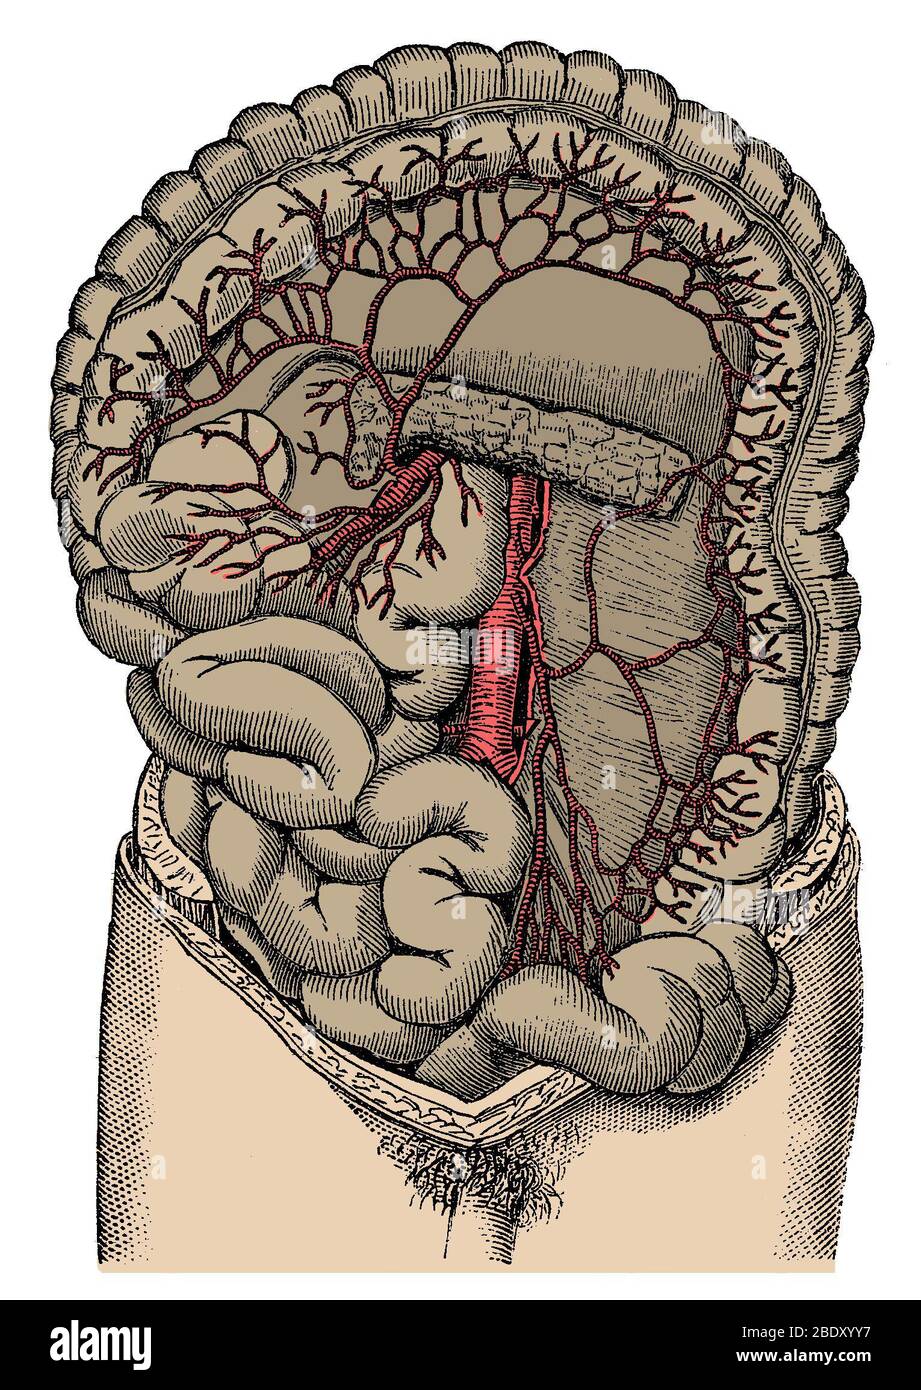 Inferior mesenteric Artery and the Aorta Stock Photo